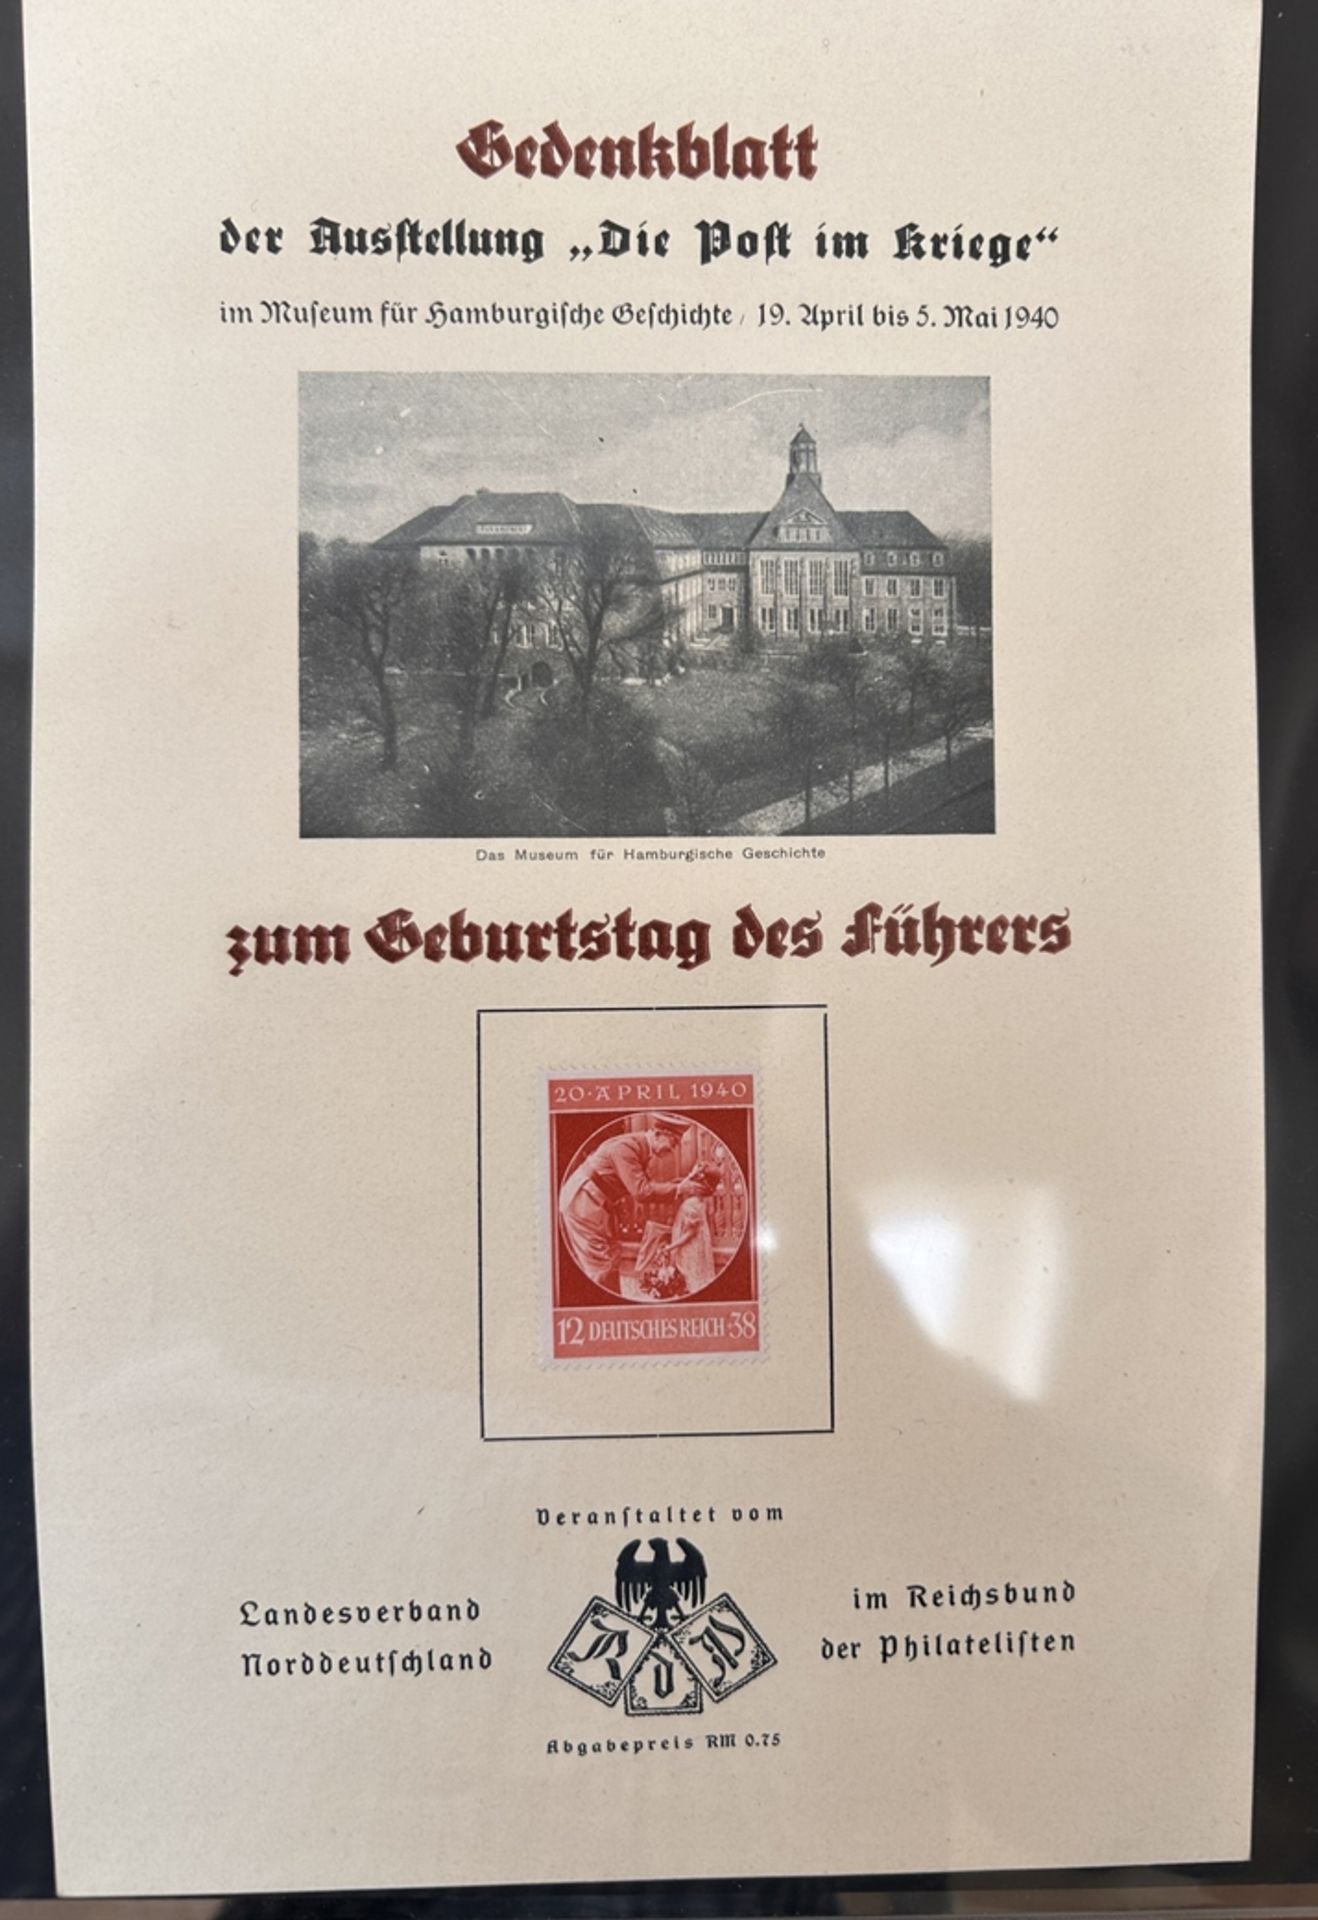 Gedenkblatt "Die Post im Kriege" Führers Geburtstag, 1940